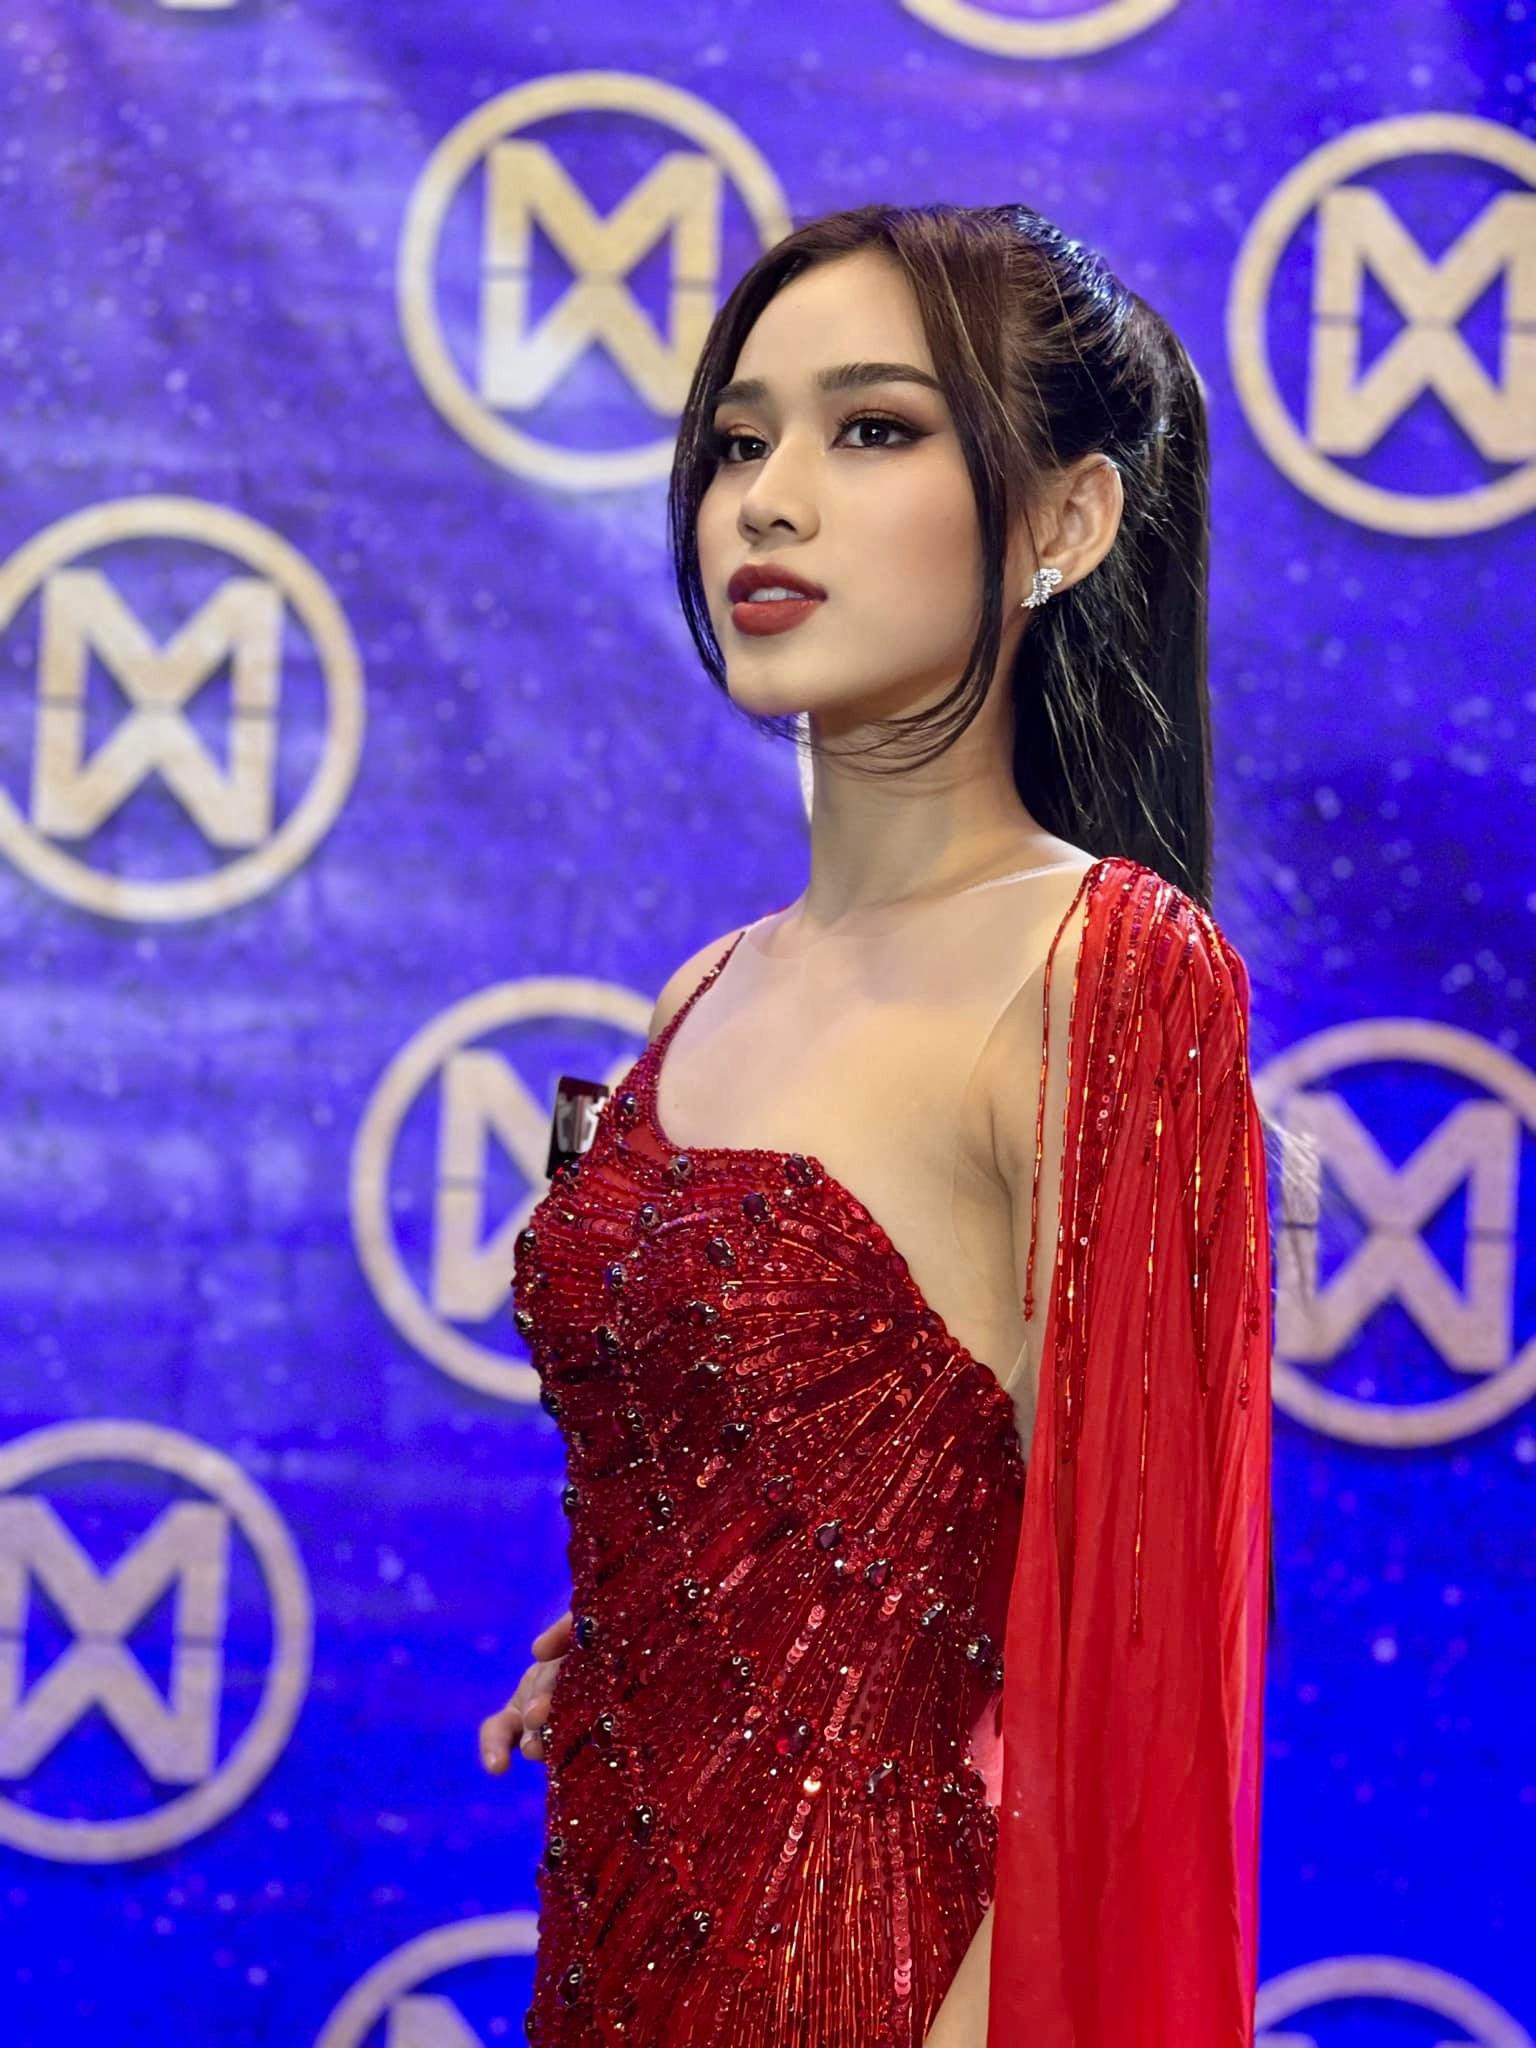 Hoa hậu Đỗ Thị Hà ‘biến hóa’ với tóc: Xoăn đuôi nhẹ vẫn là ‘chân ái’ - Ảnh 17.